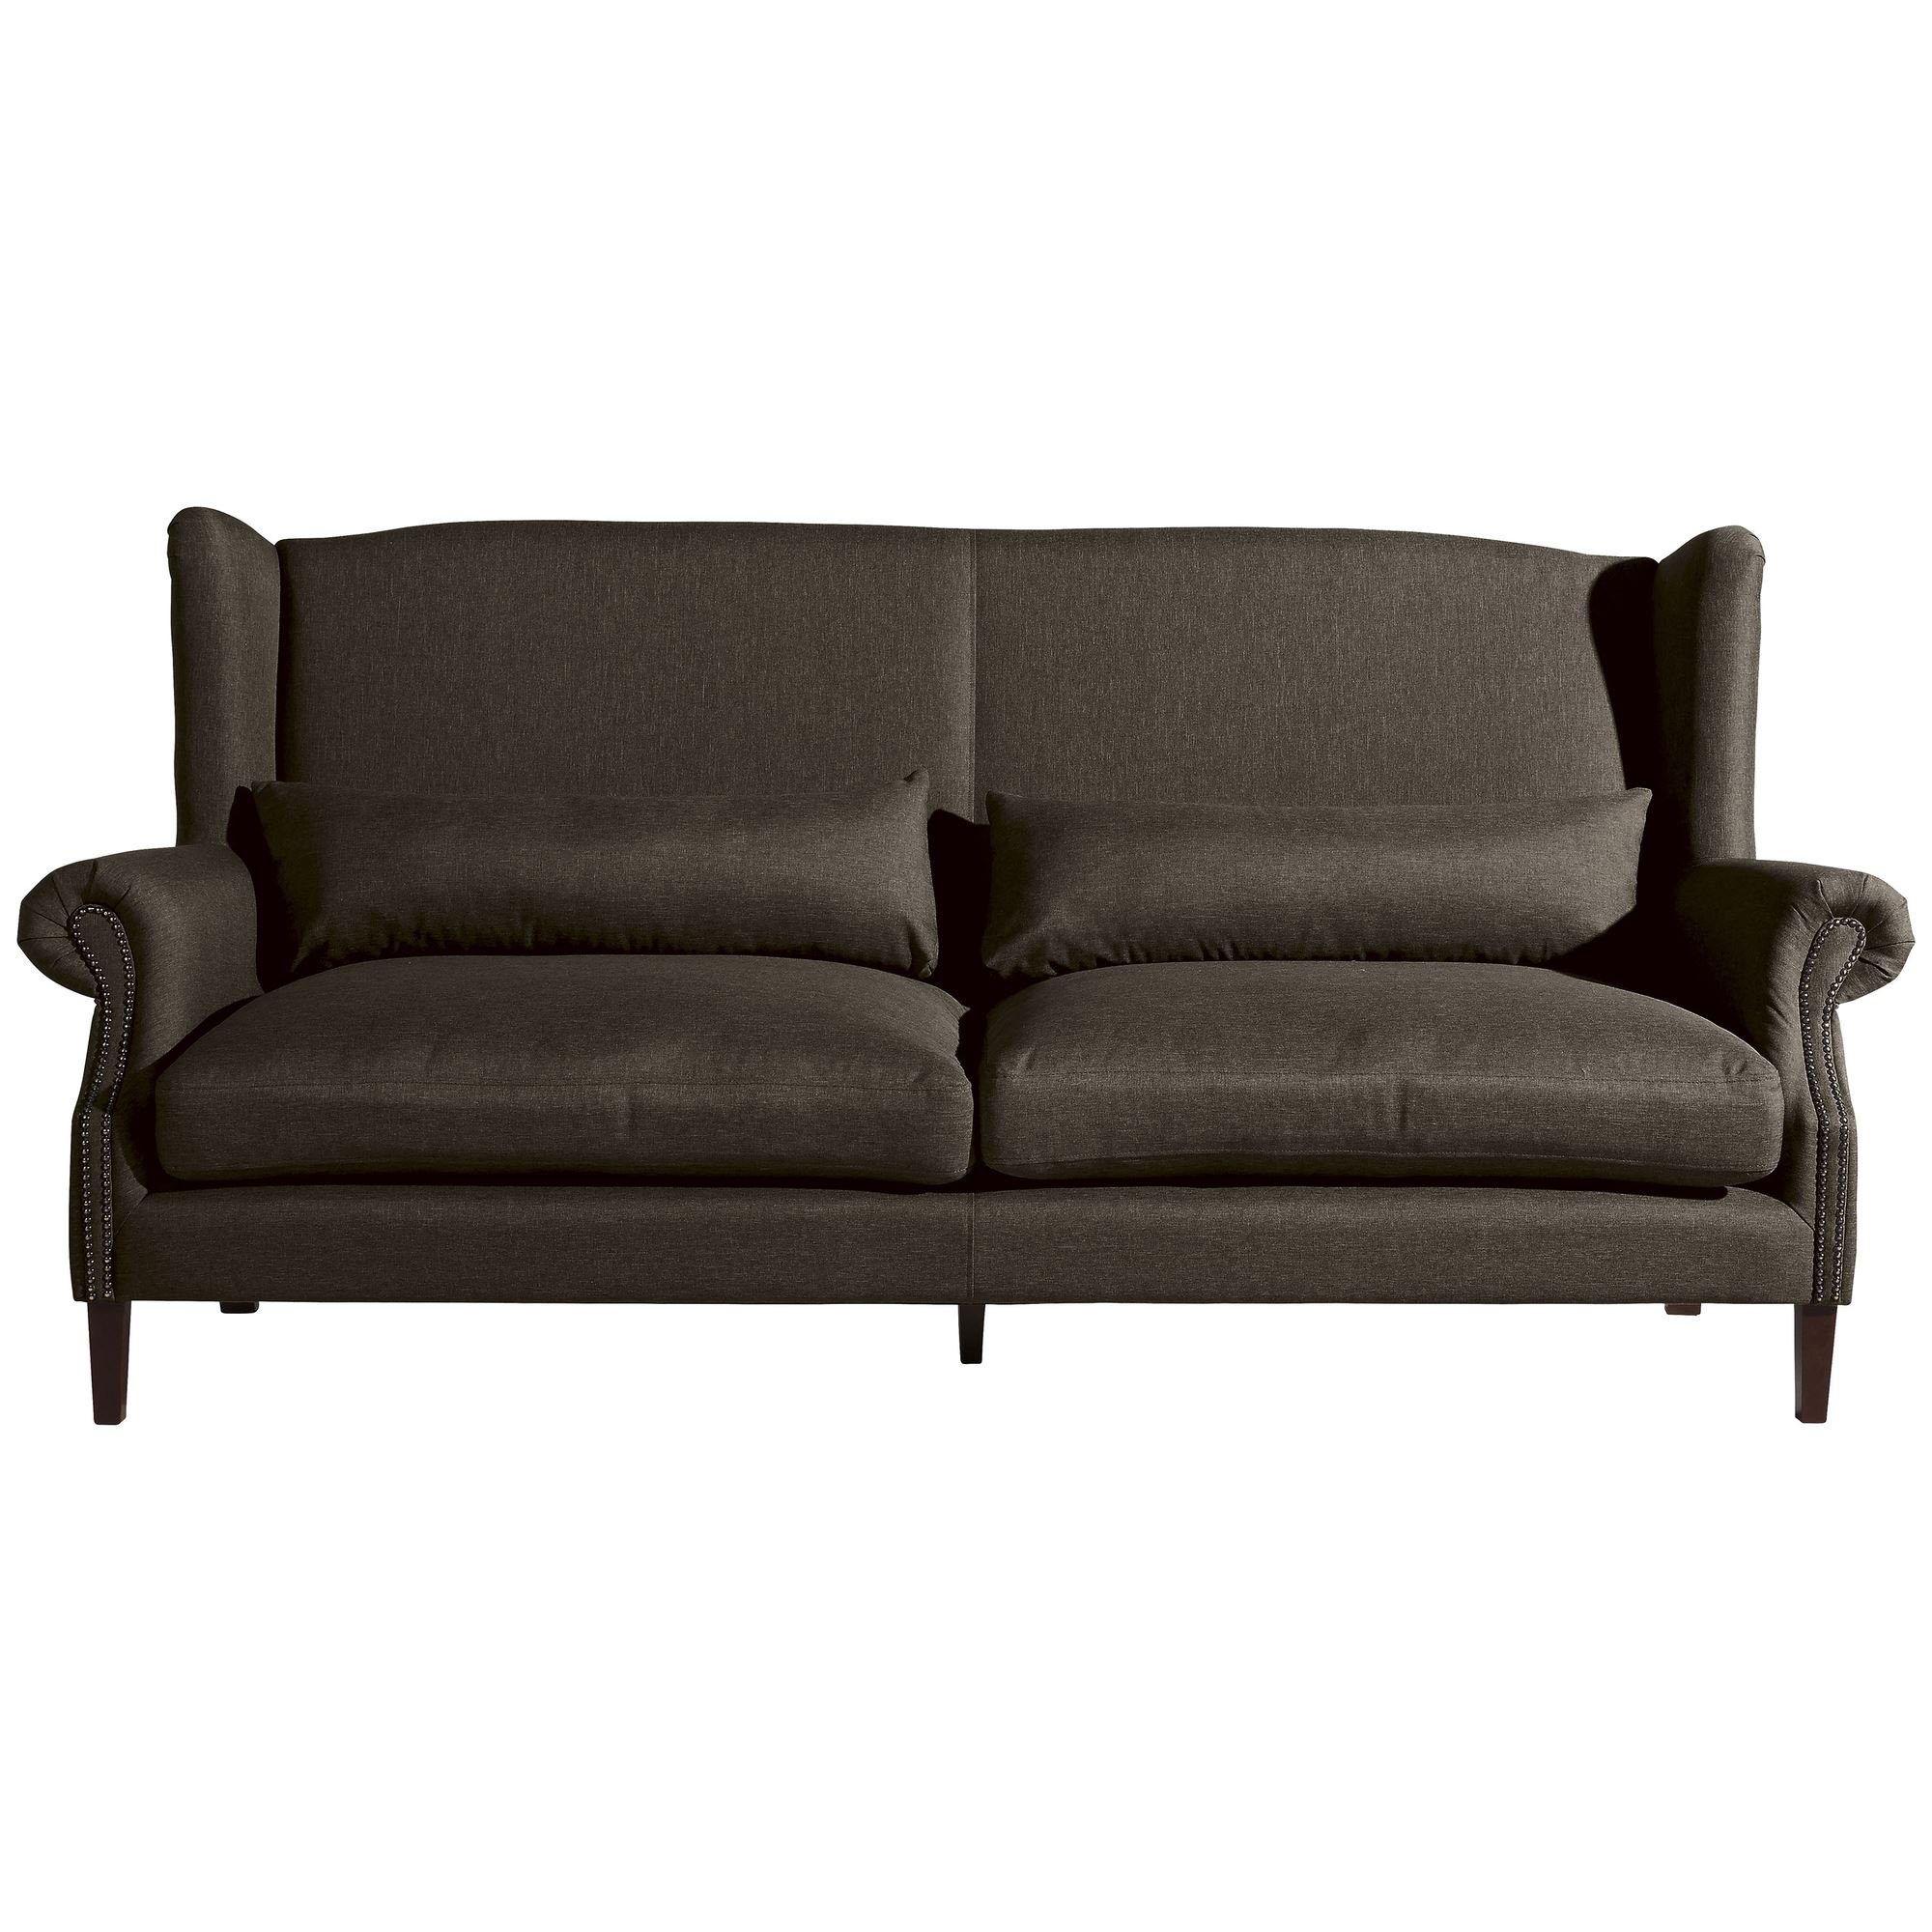 Sofa Kostenlosem Sparpreis Sofa Teile, aufm 58 3-Sitzer Flachgewebe, 1 Bezug (2-geteilt) verarbeitet,bequemer Versand Kandy hochwertig Kessel Sitz inkl.